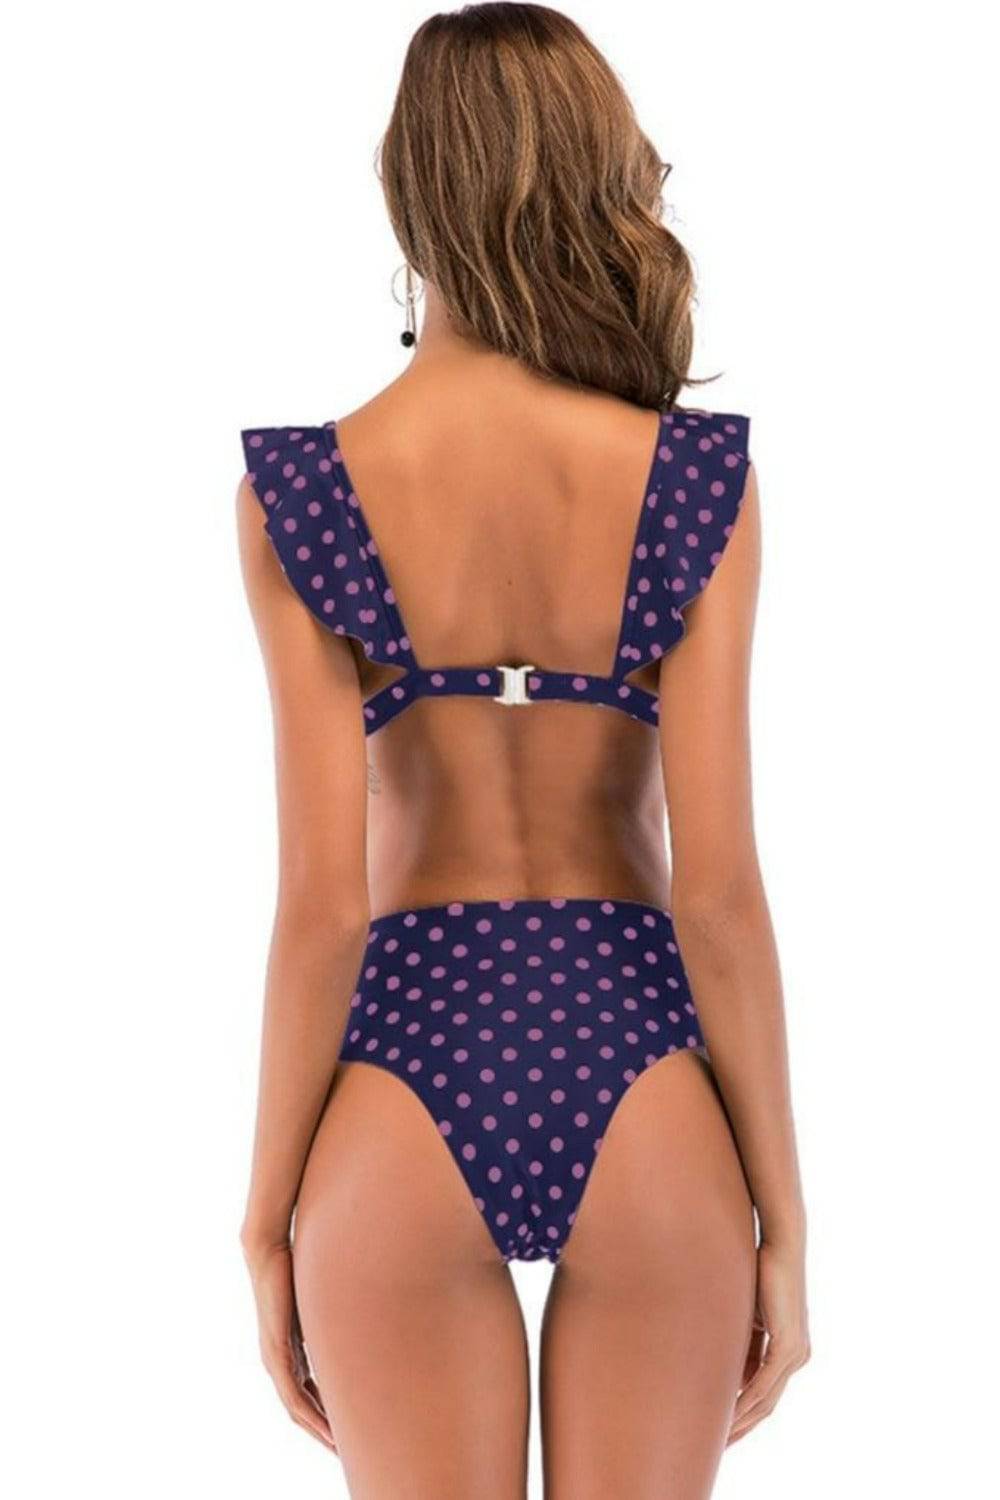 Rachel Polka Dot Ruffle Purple High Waisted Bikini - TGC Boutique - Bikini